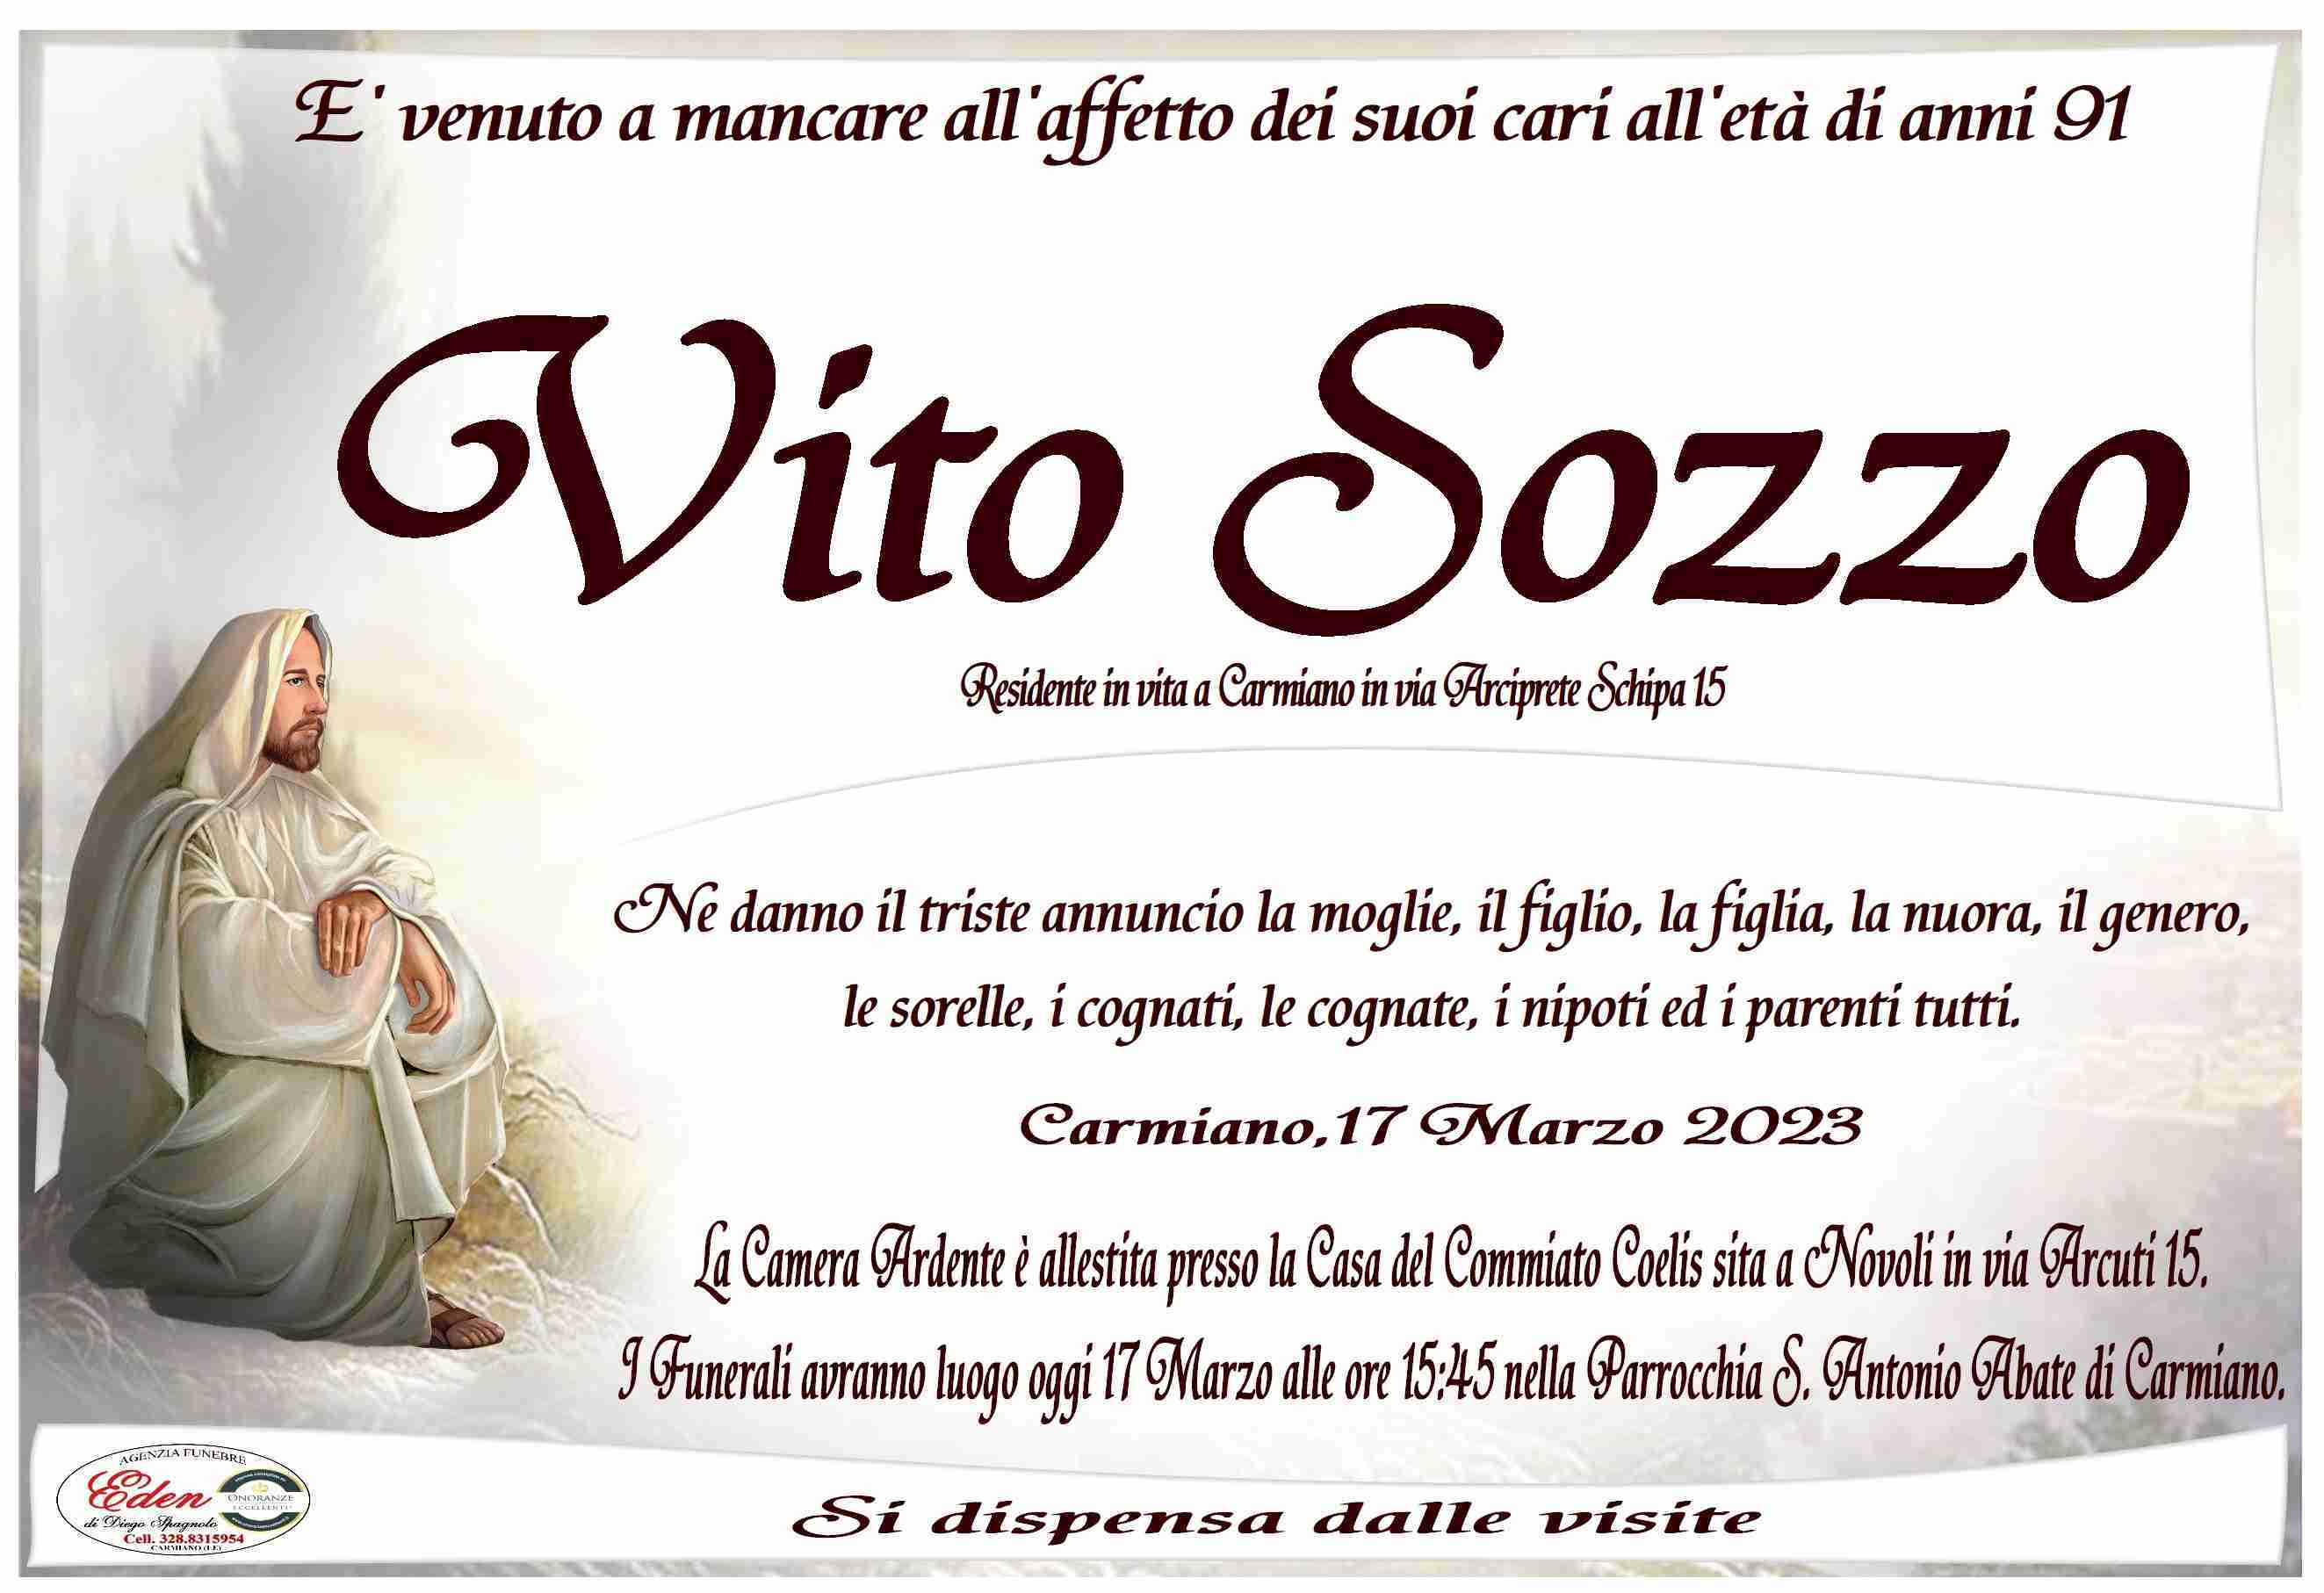 Vito Sozzo